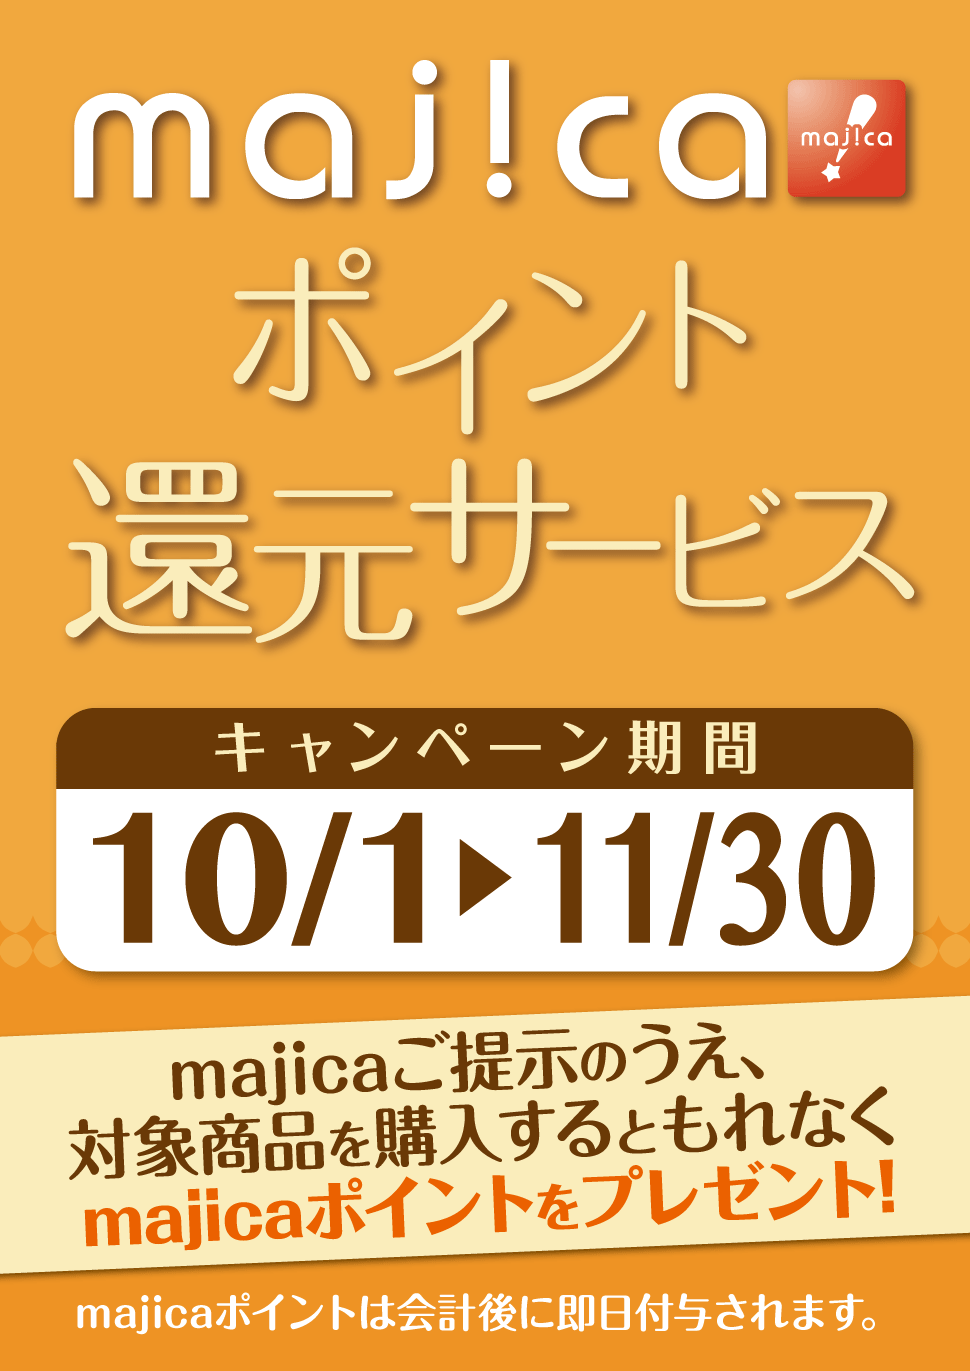 majicaポイント還元サービス「ライフスタイルキャンペーン」